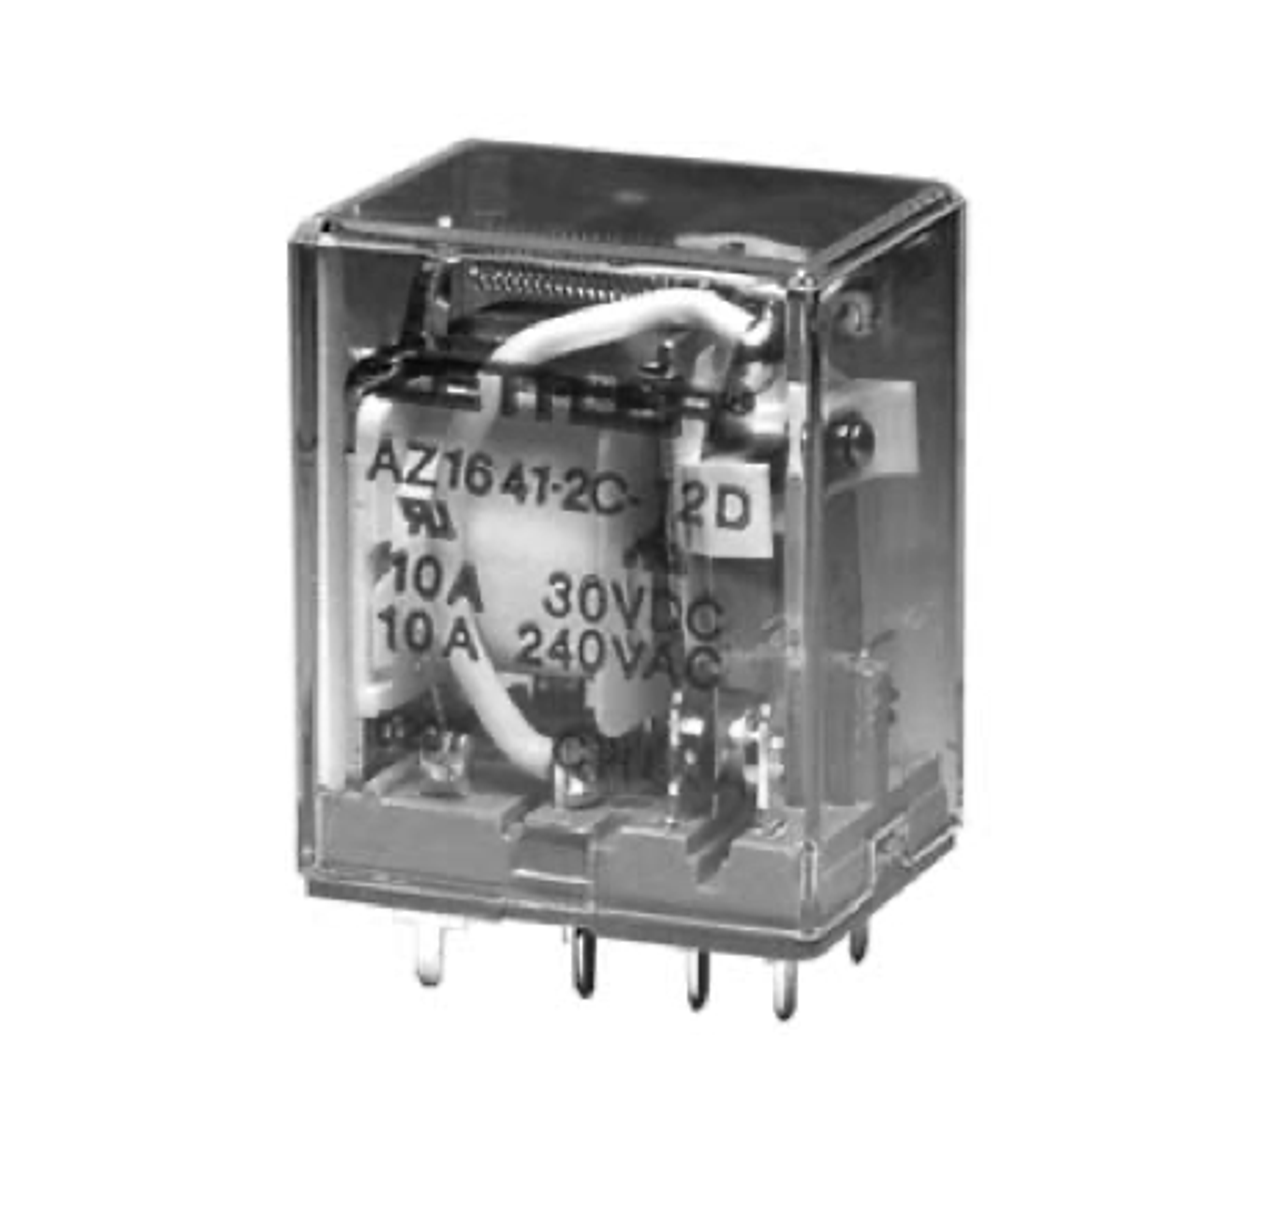 American Zettler AZ1641-4C-48D Power Relay